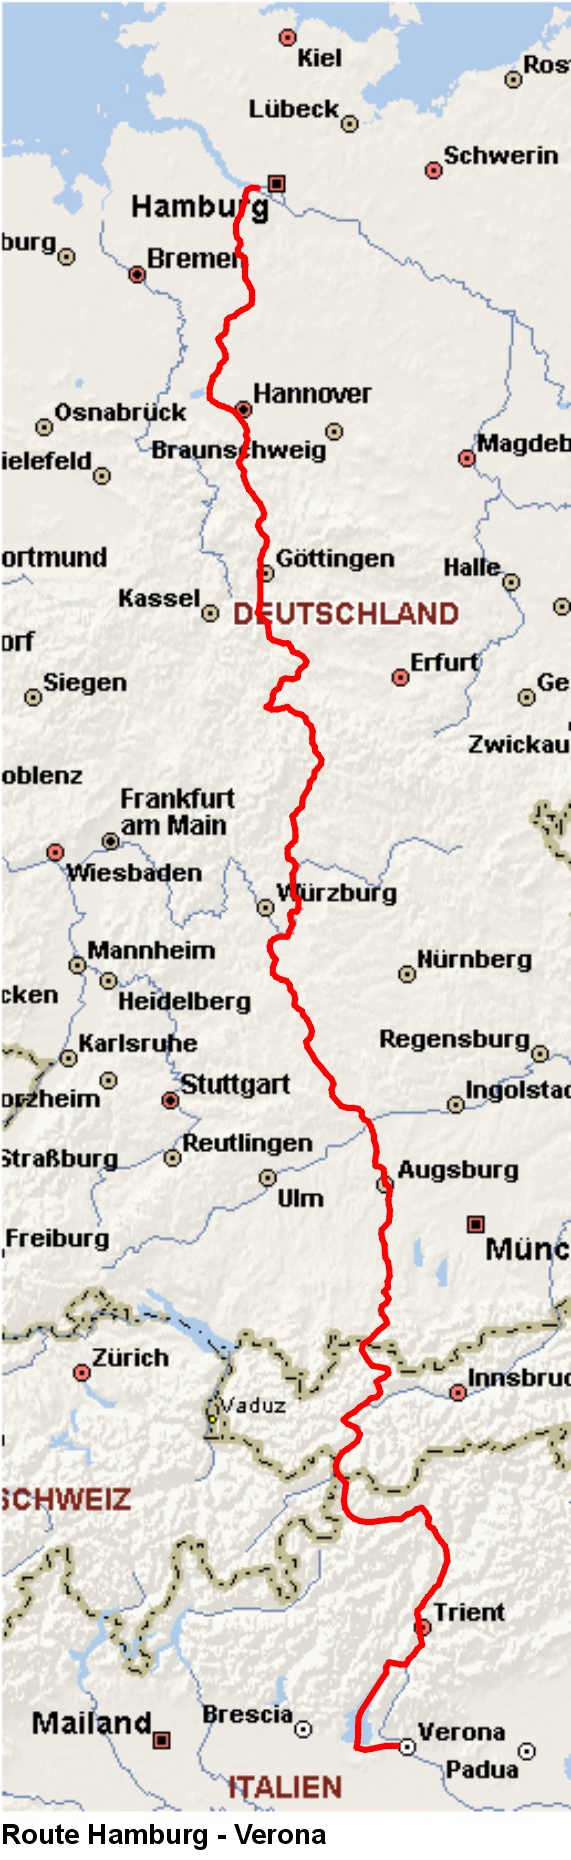 Route Hamburg - Verona